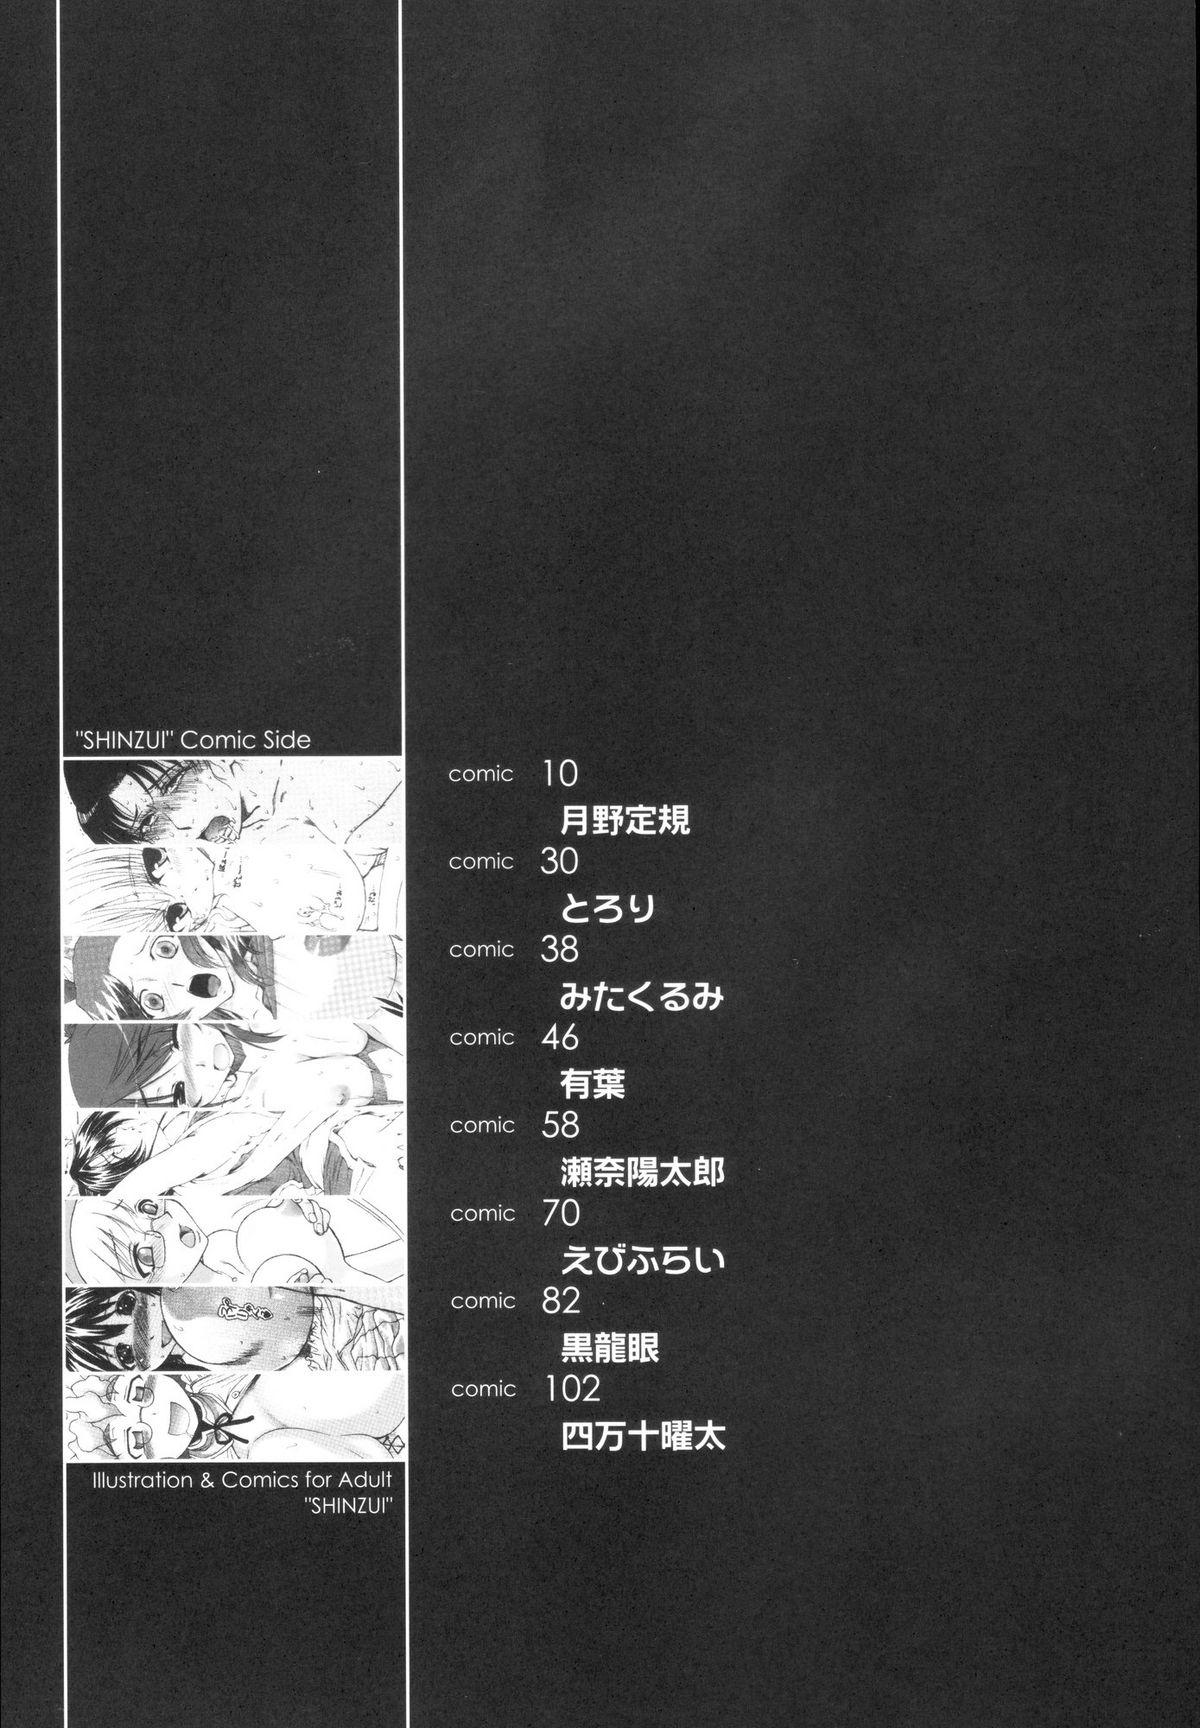 Soloboy Shinzui Vol. 1 Clip - Page 8